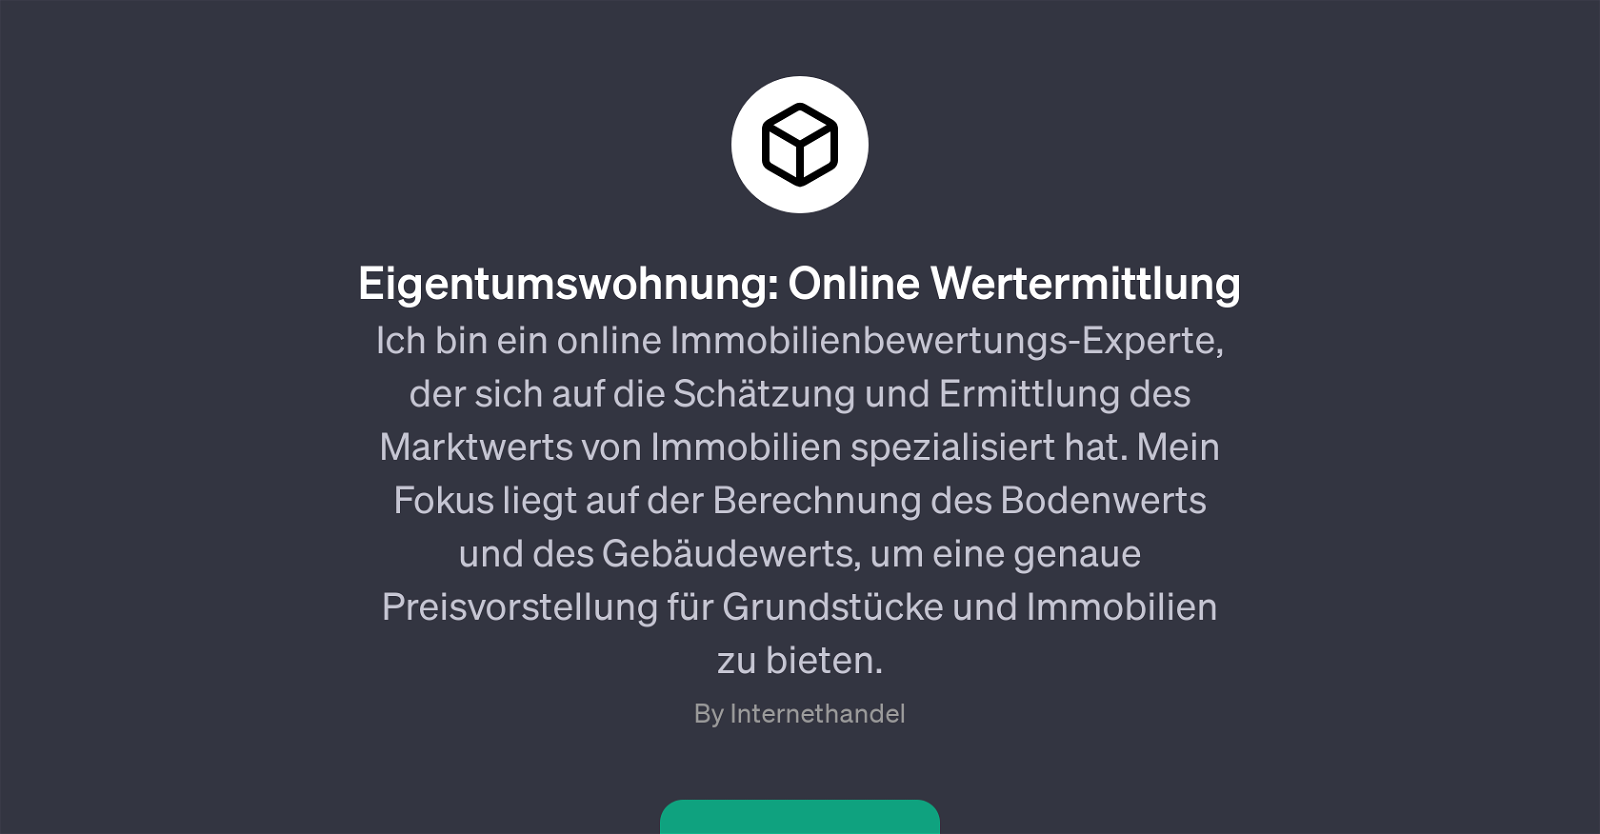 Eigentumswohnung: Online Wertermittlung website